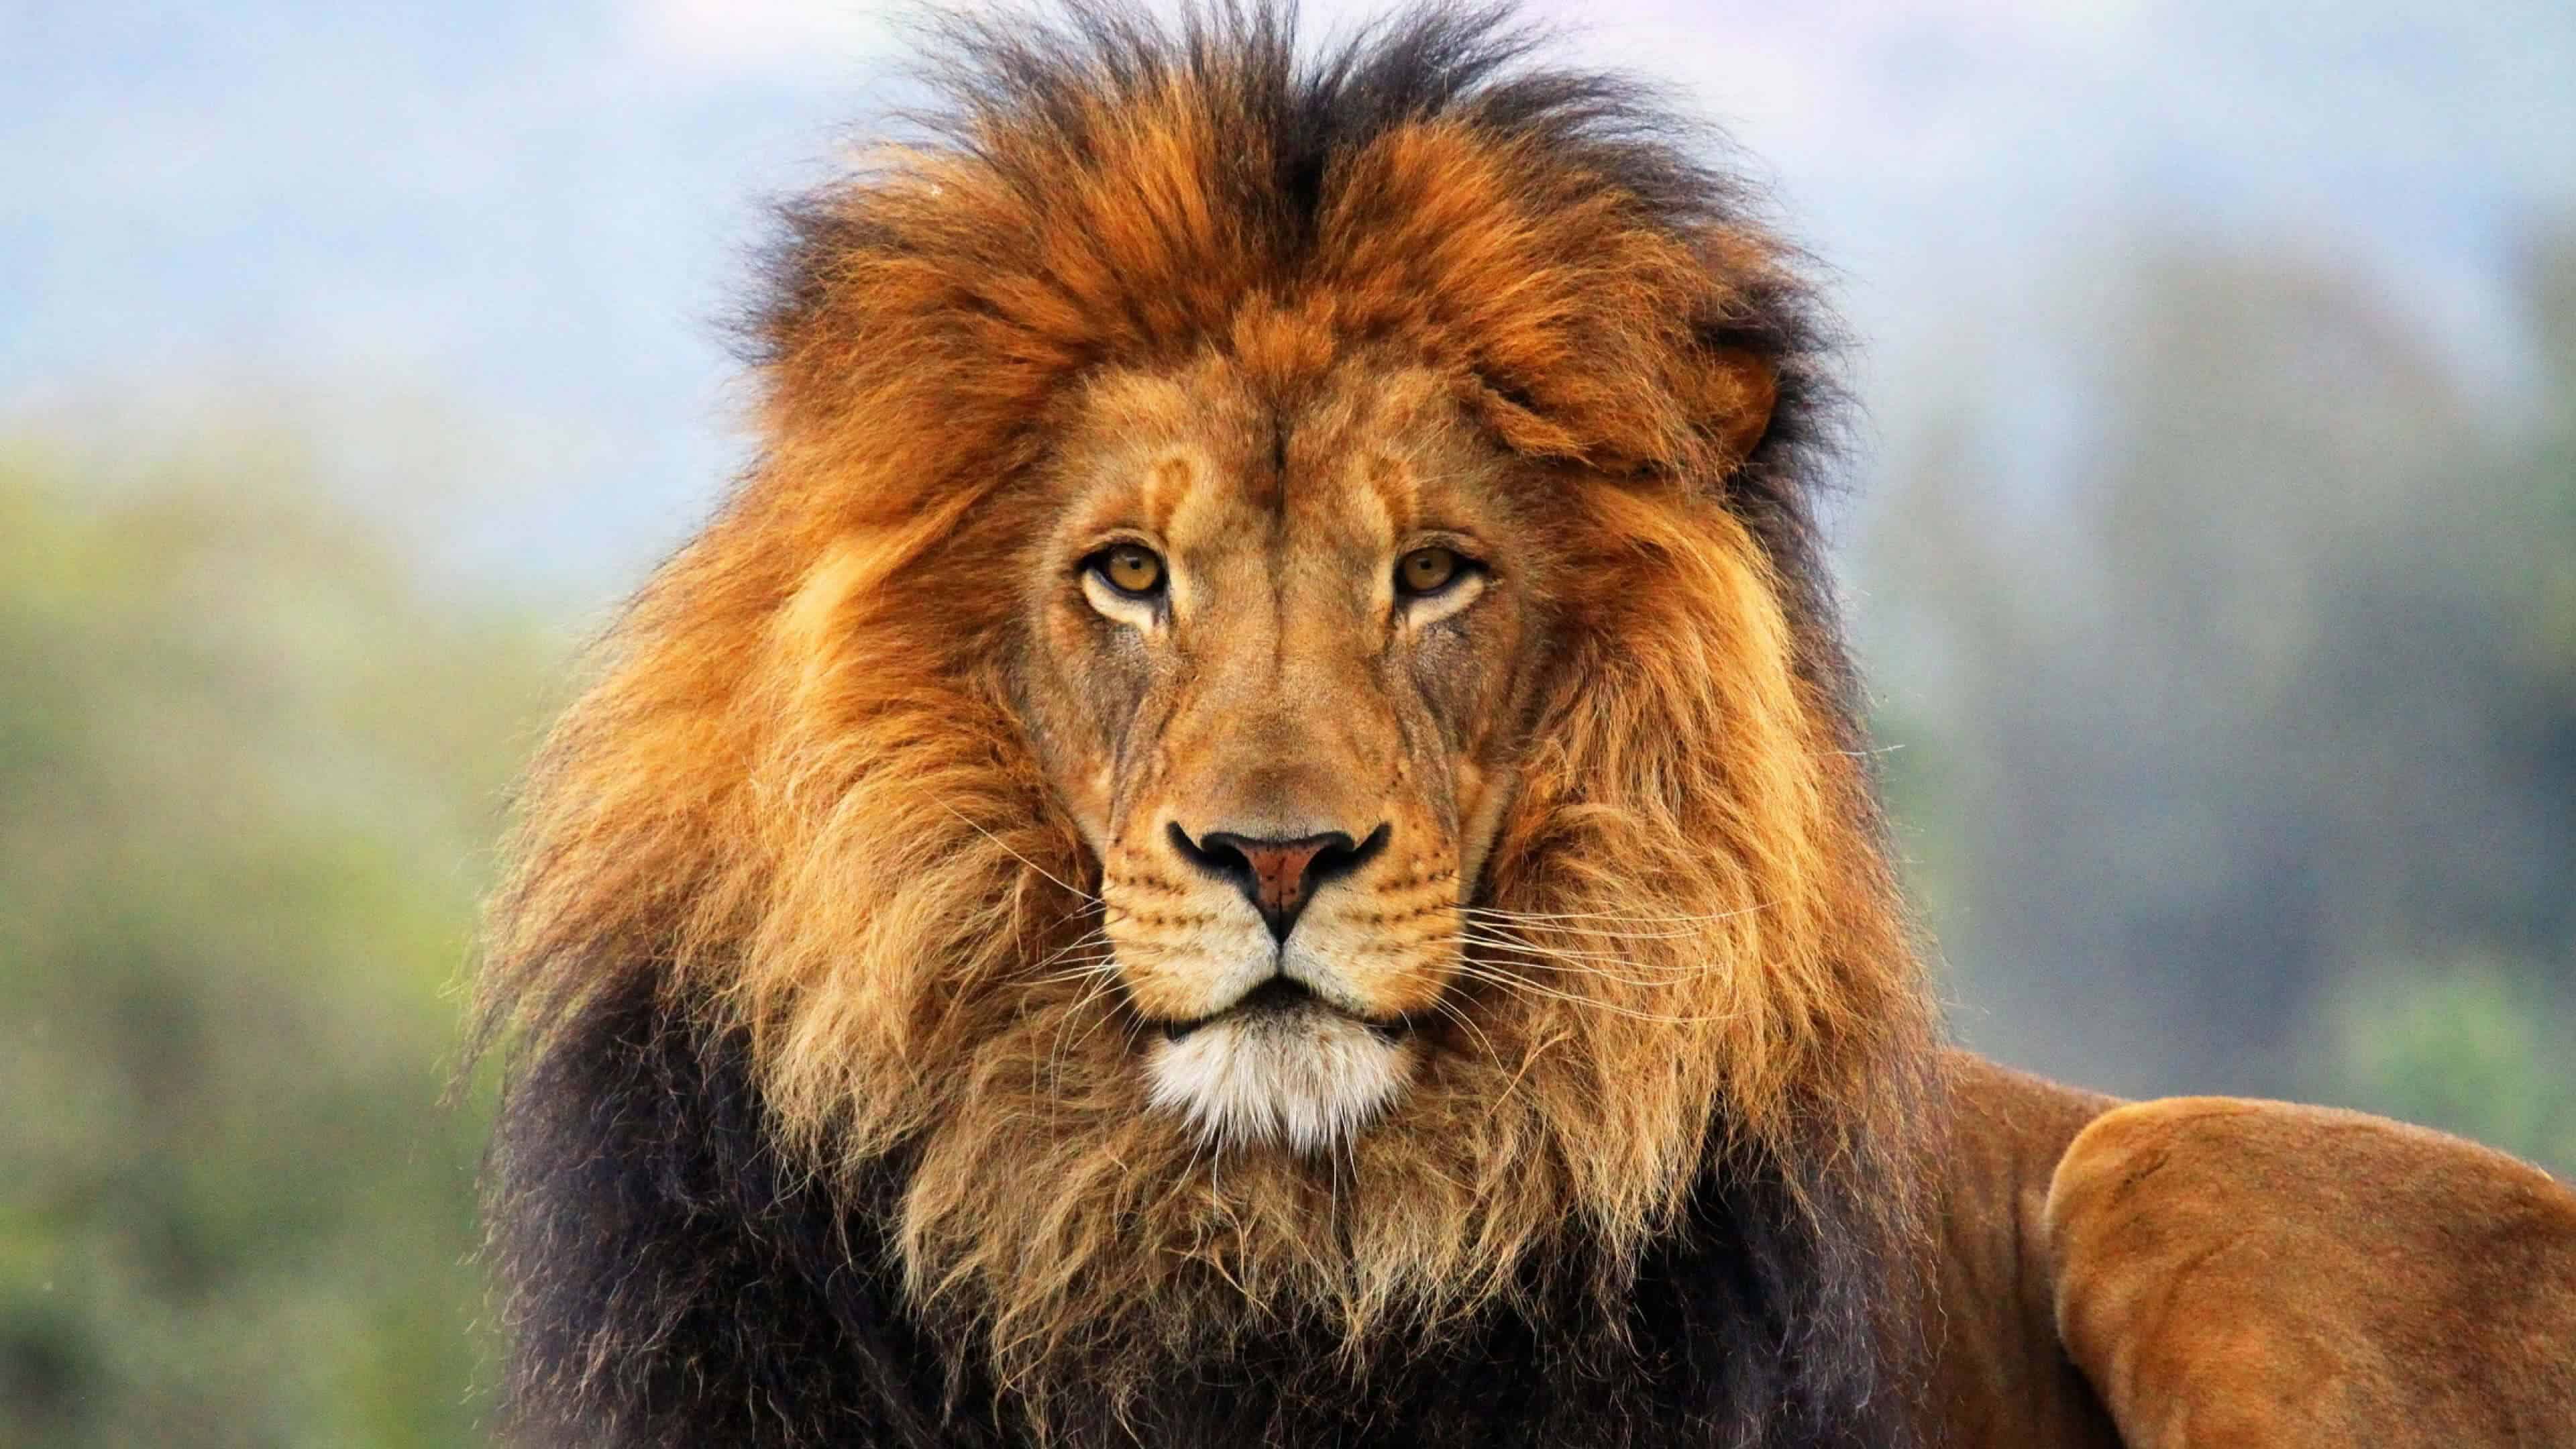 Male Lion - Big Cat Sanctuary UHD 4K Wallpaper | Pixelz